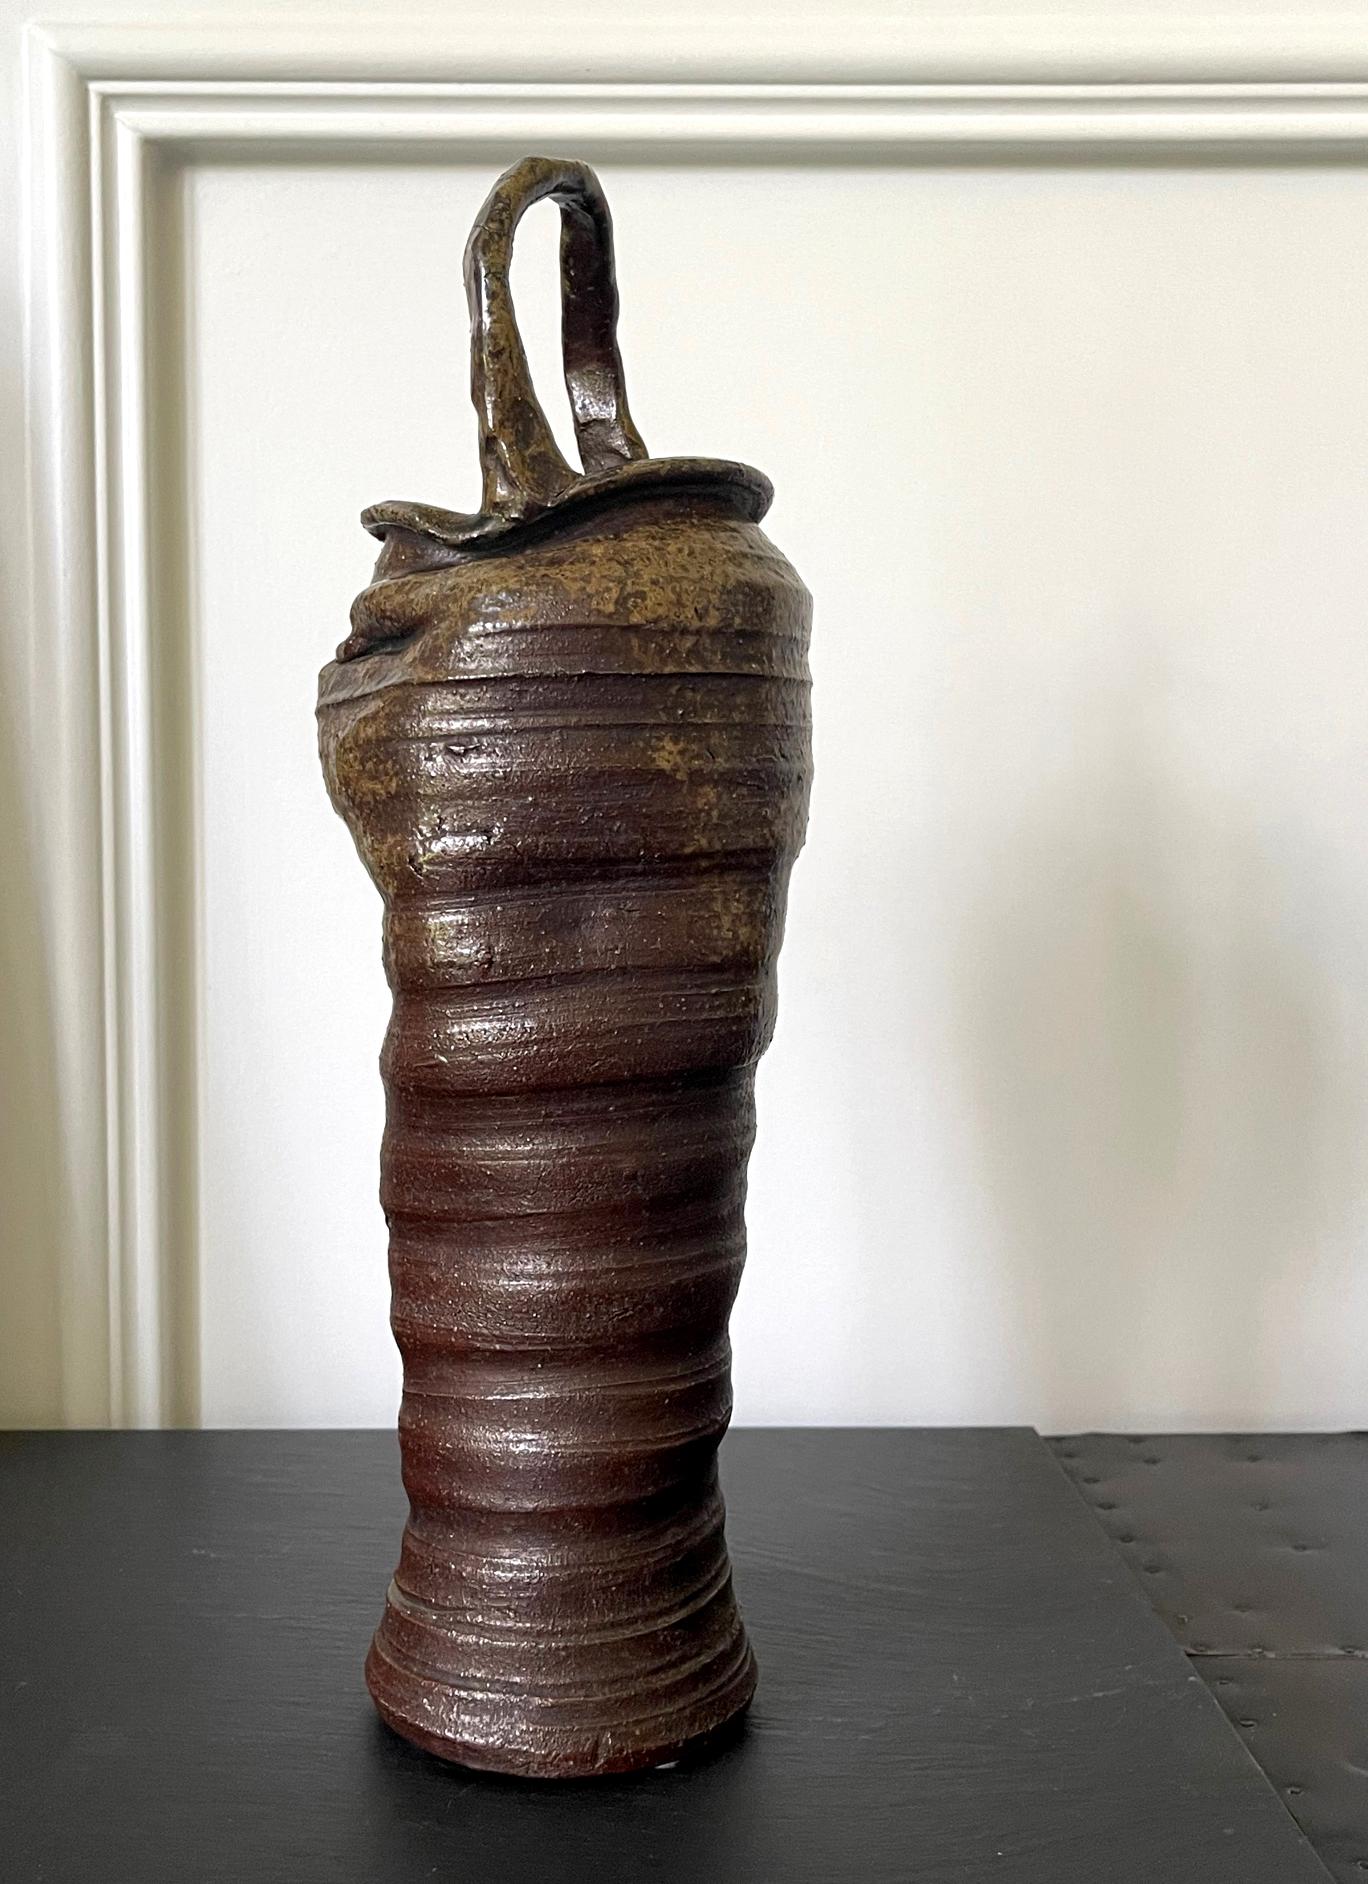 Un grand vase vintage en céramique avec poignée du Japon (20e siècle) par Nanba Koyo. Fabriqué dans la tradition de la vaisselle Bizen, ce vase présente une esthétique moderne avec une forme verticale élancée et élégante. Des anneaux intentionnels